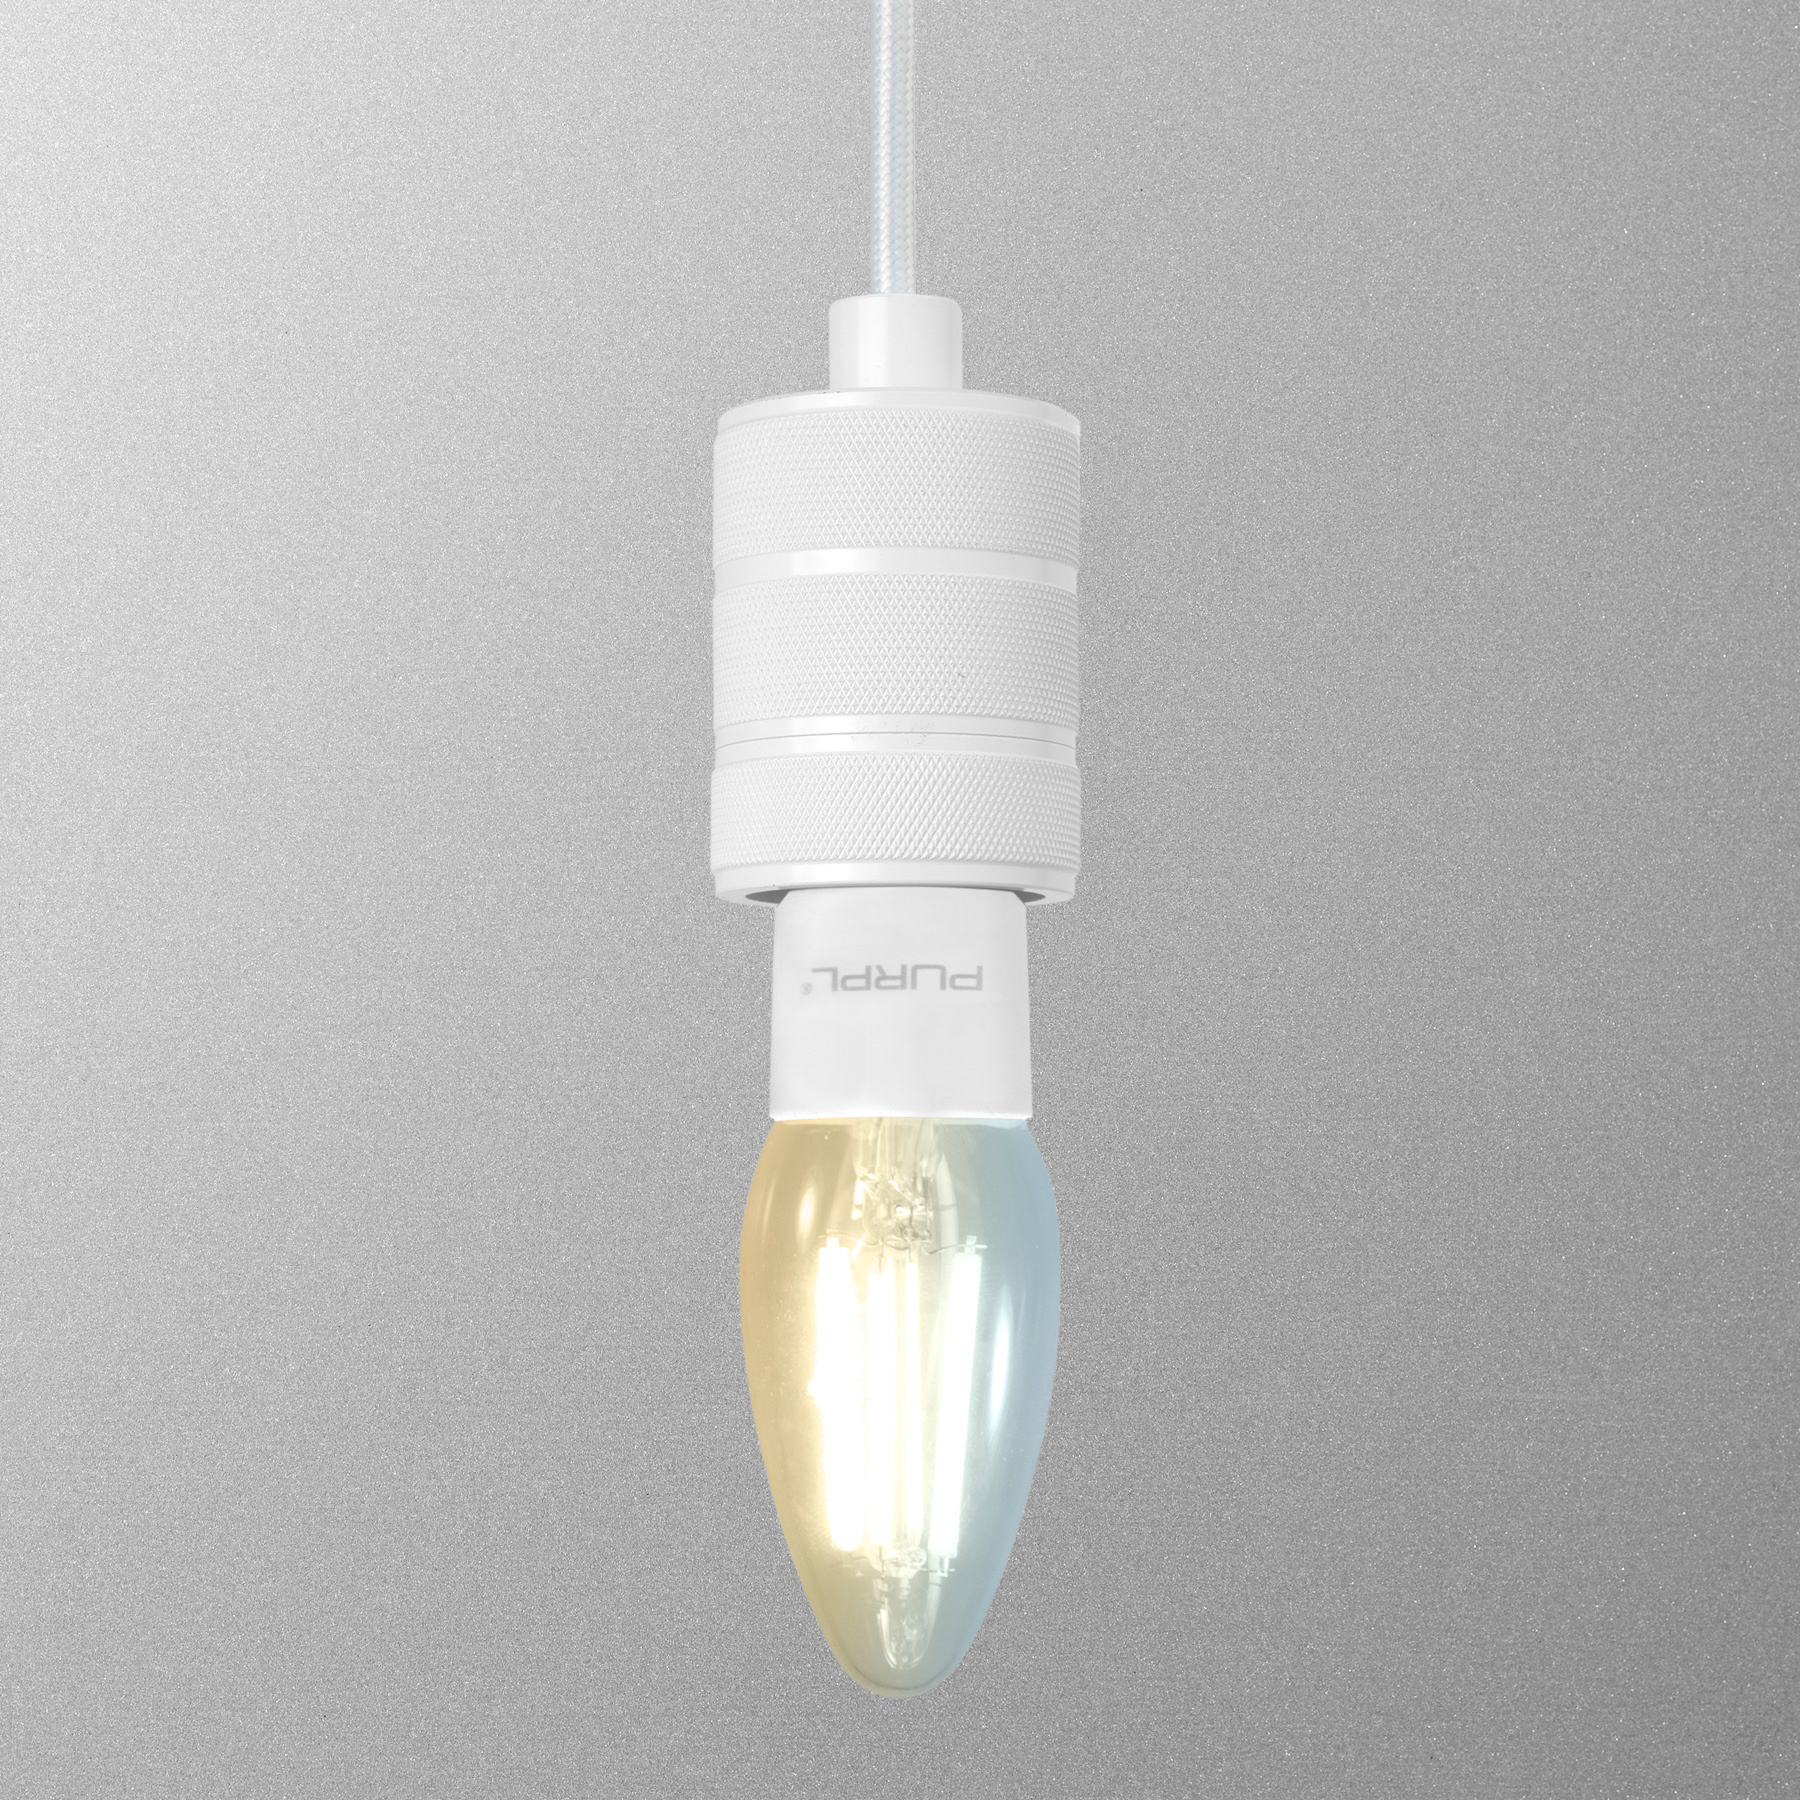 Permanent Rijke man weer LED lamp e27 koud wit| LED24 - LED24